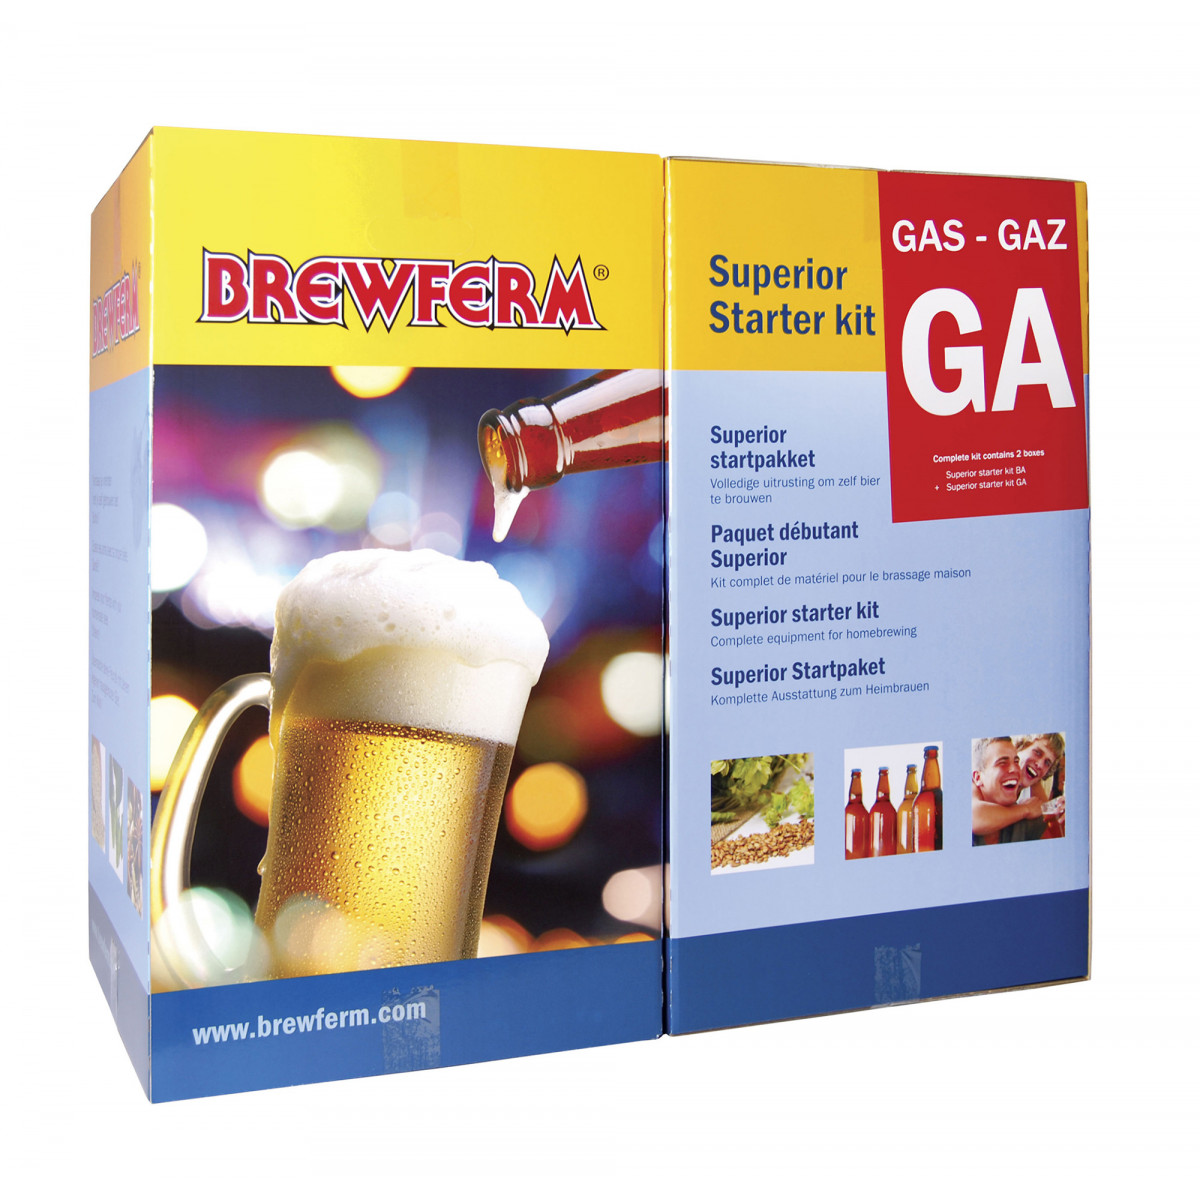 Brewferm Superior Startpaket Gas